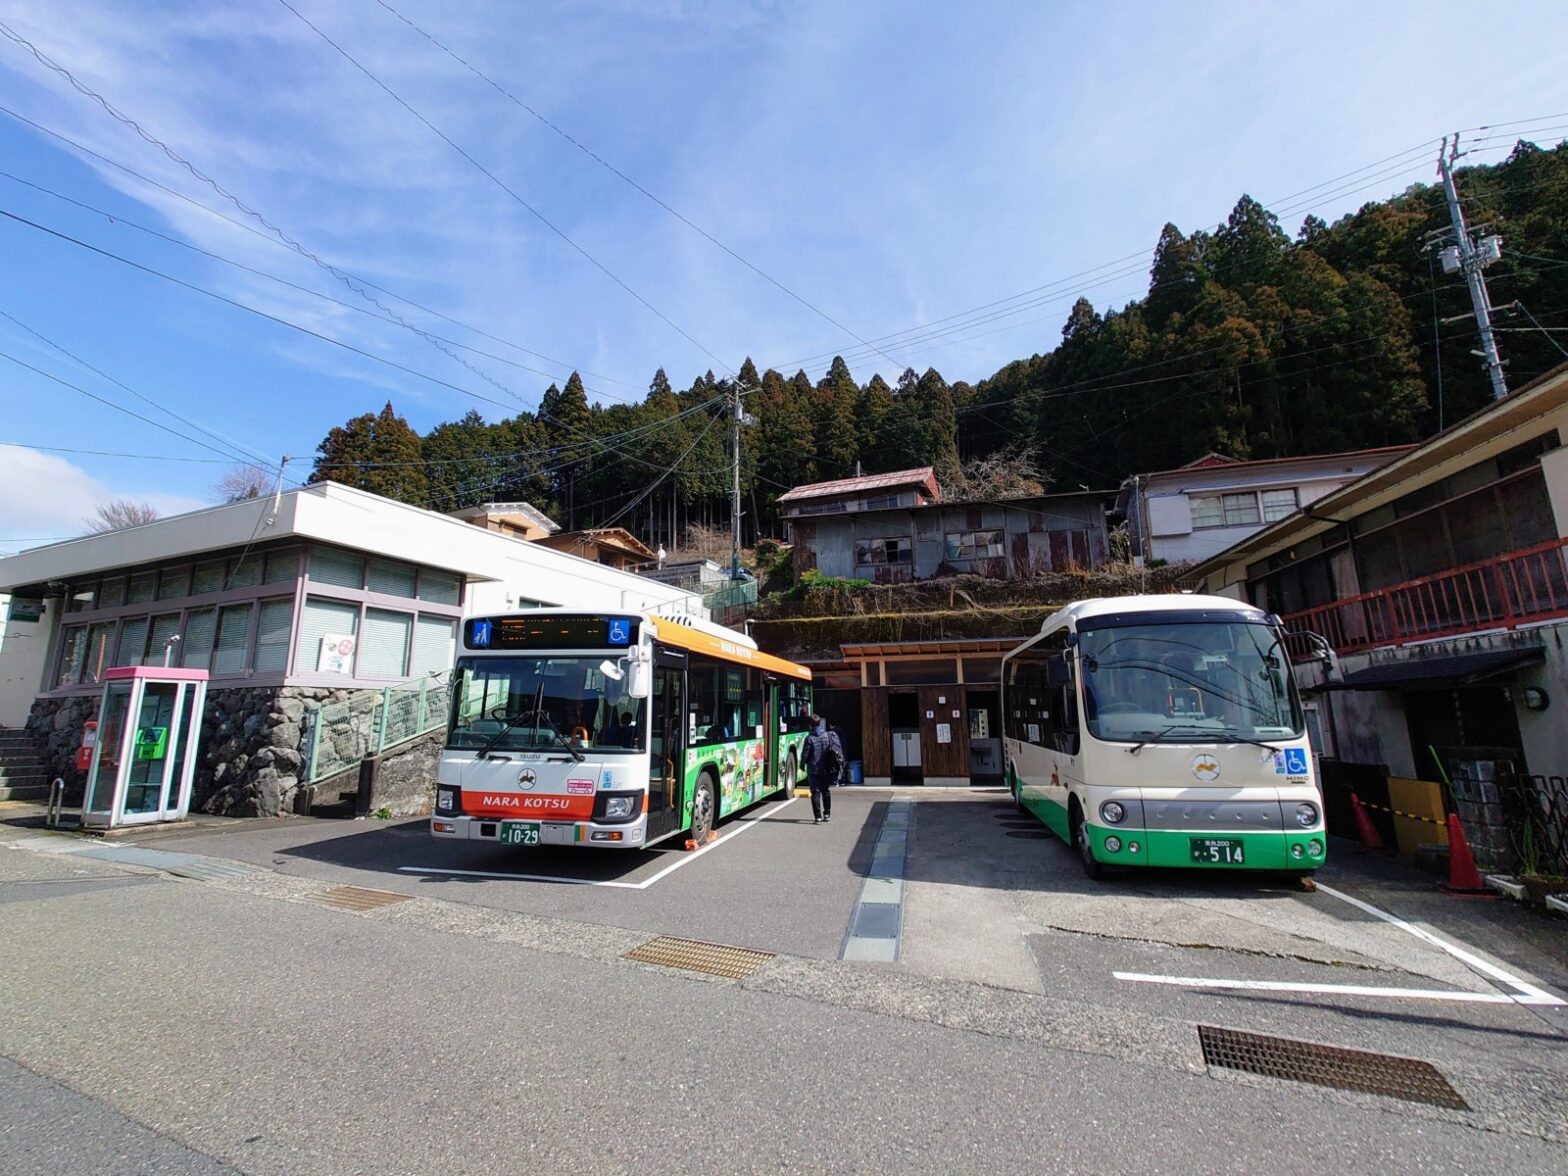 日本一長い路線バス 八木新宮線